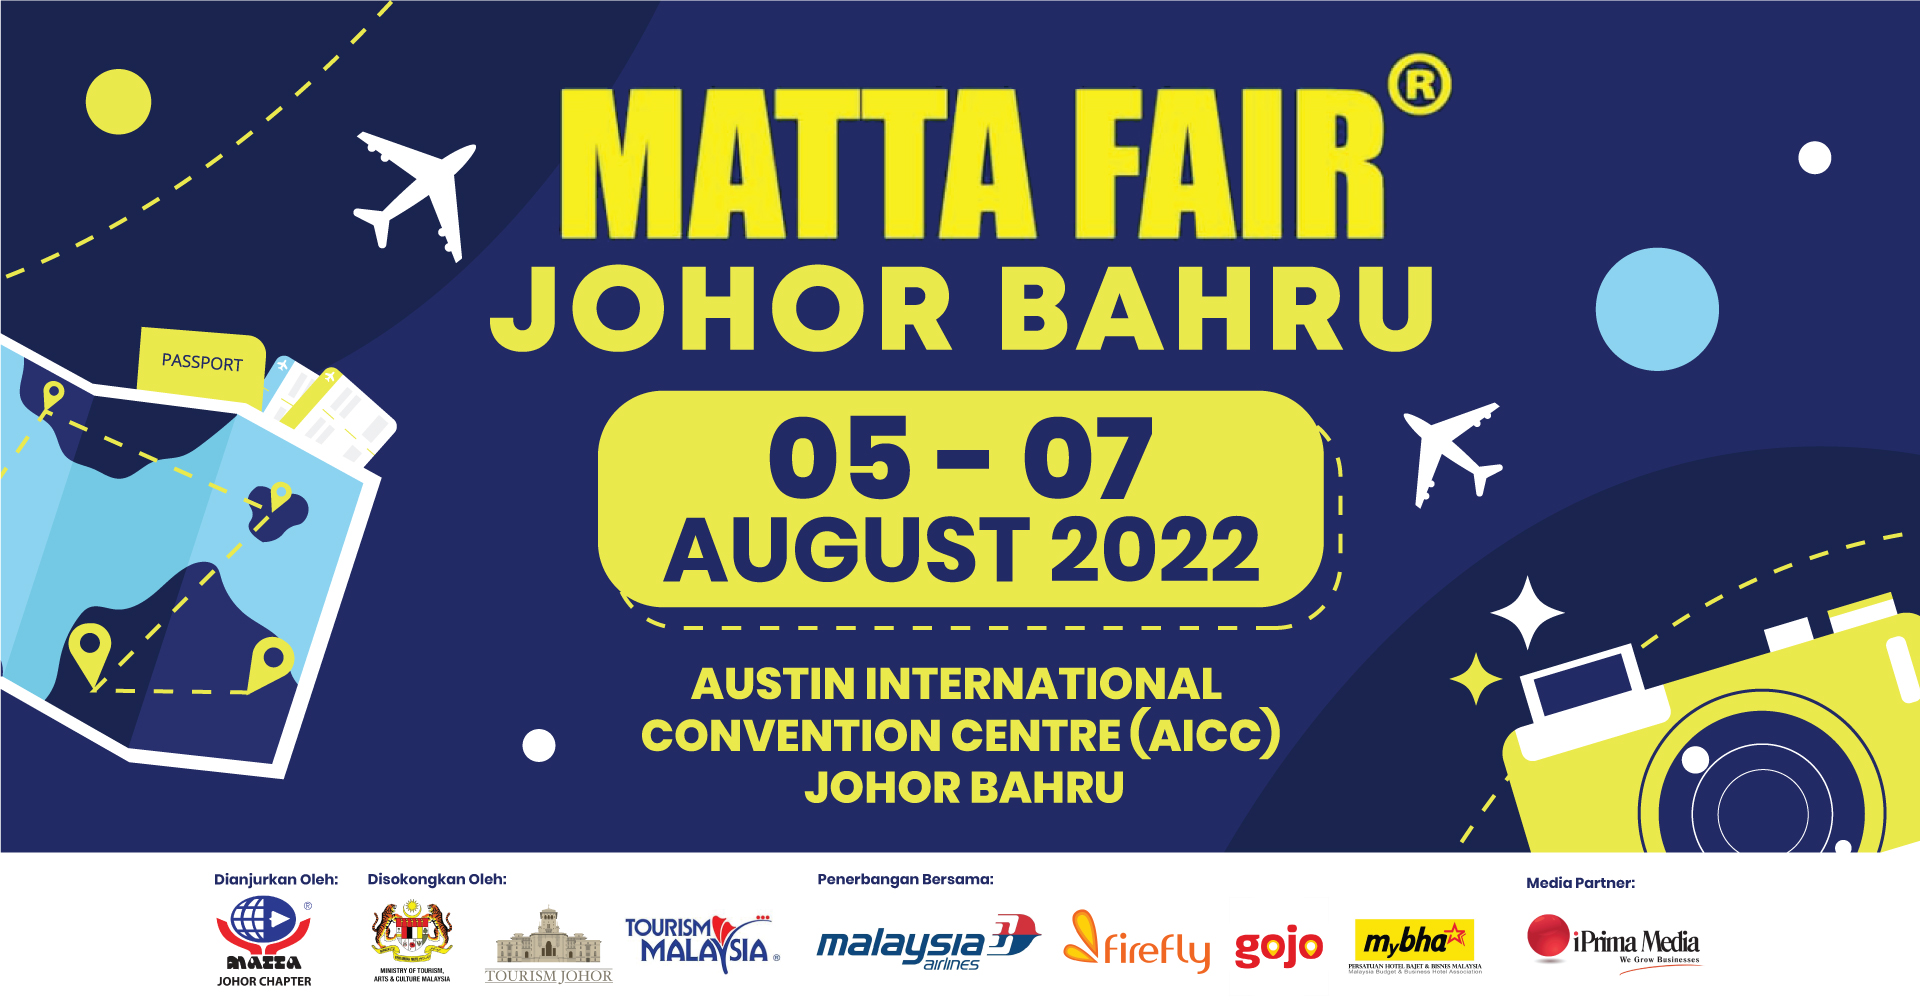 2022 Matta Fair Johor | Free Gifts, Travel Deals, Promotions